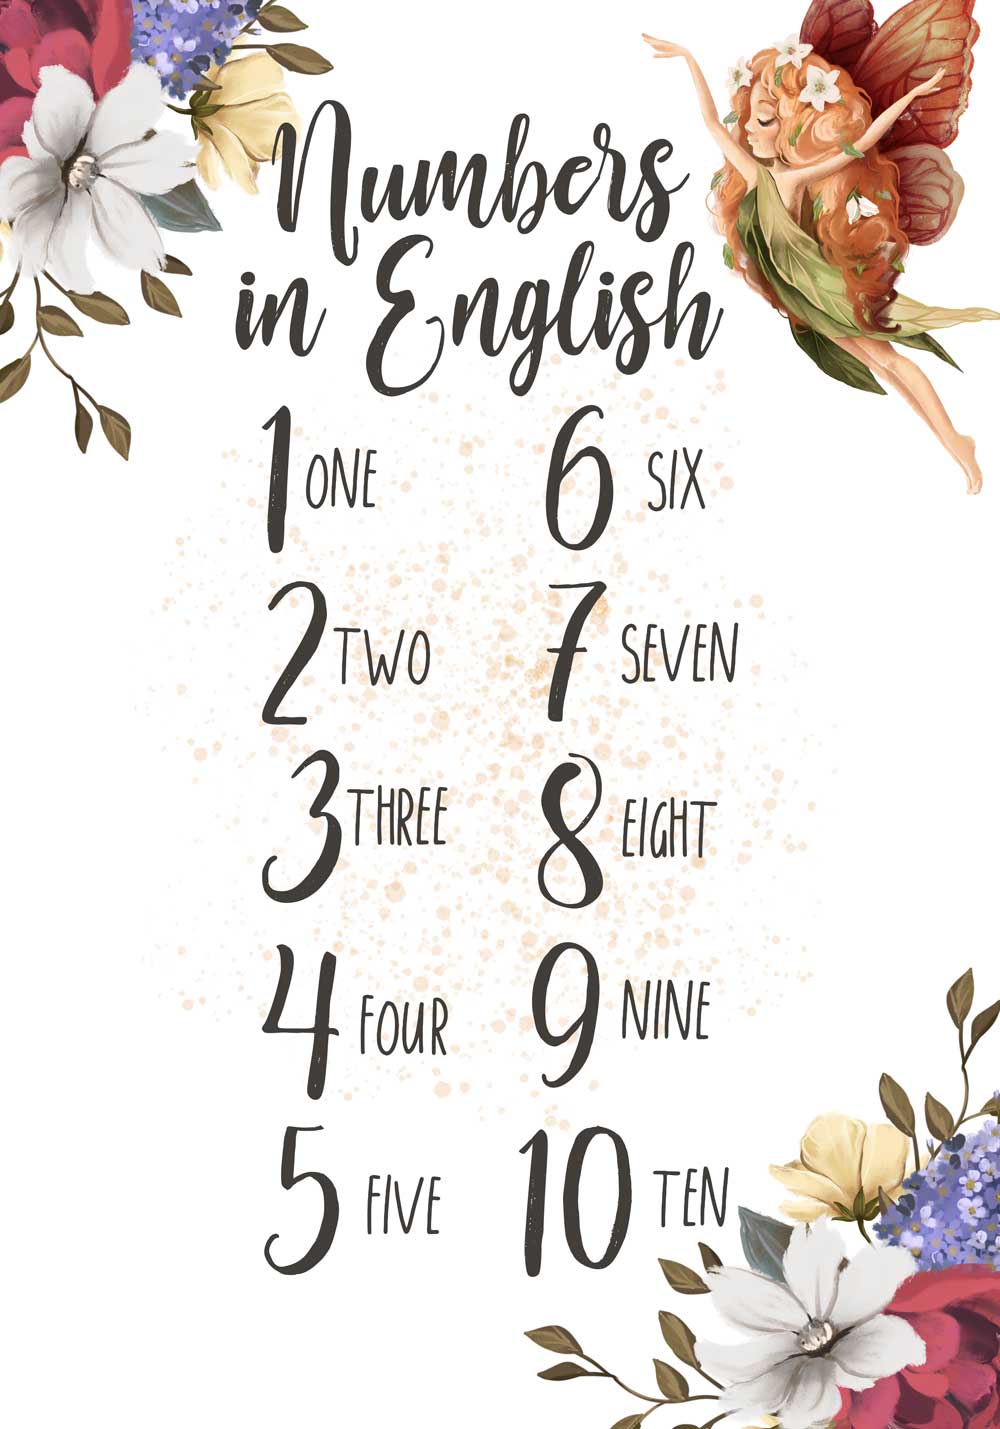 Plakat do nauki liczb po angielsku z wróżką Plakaty